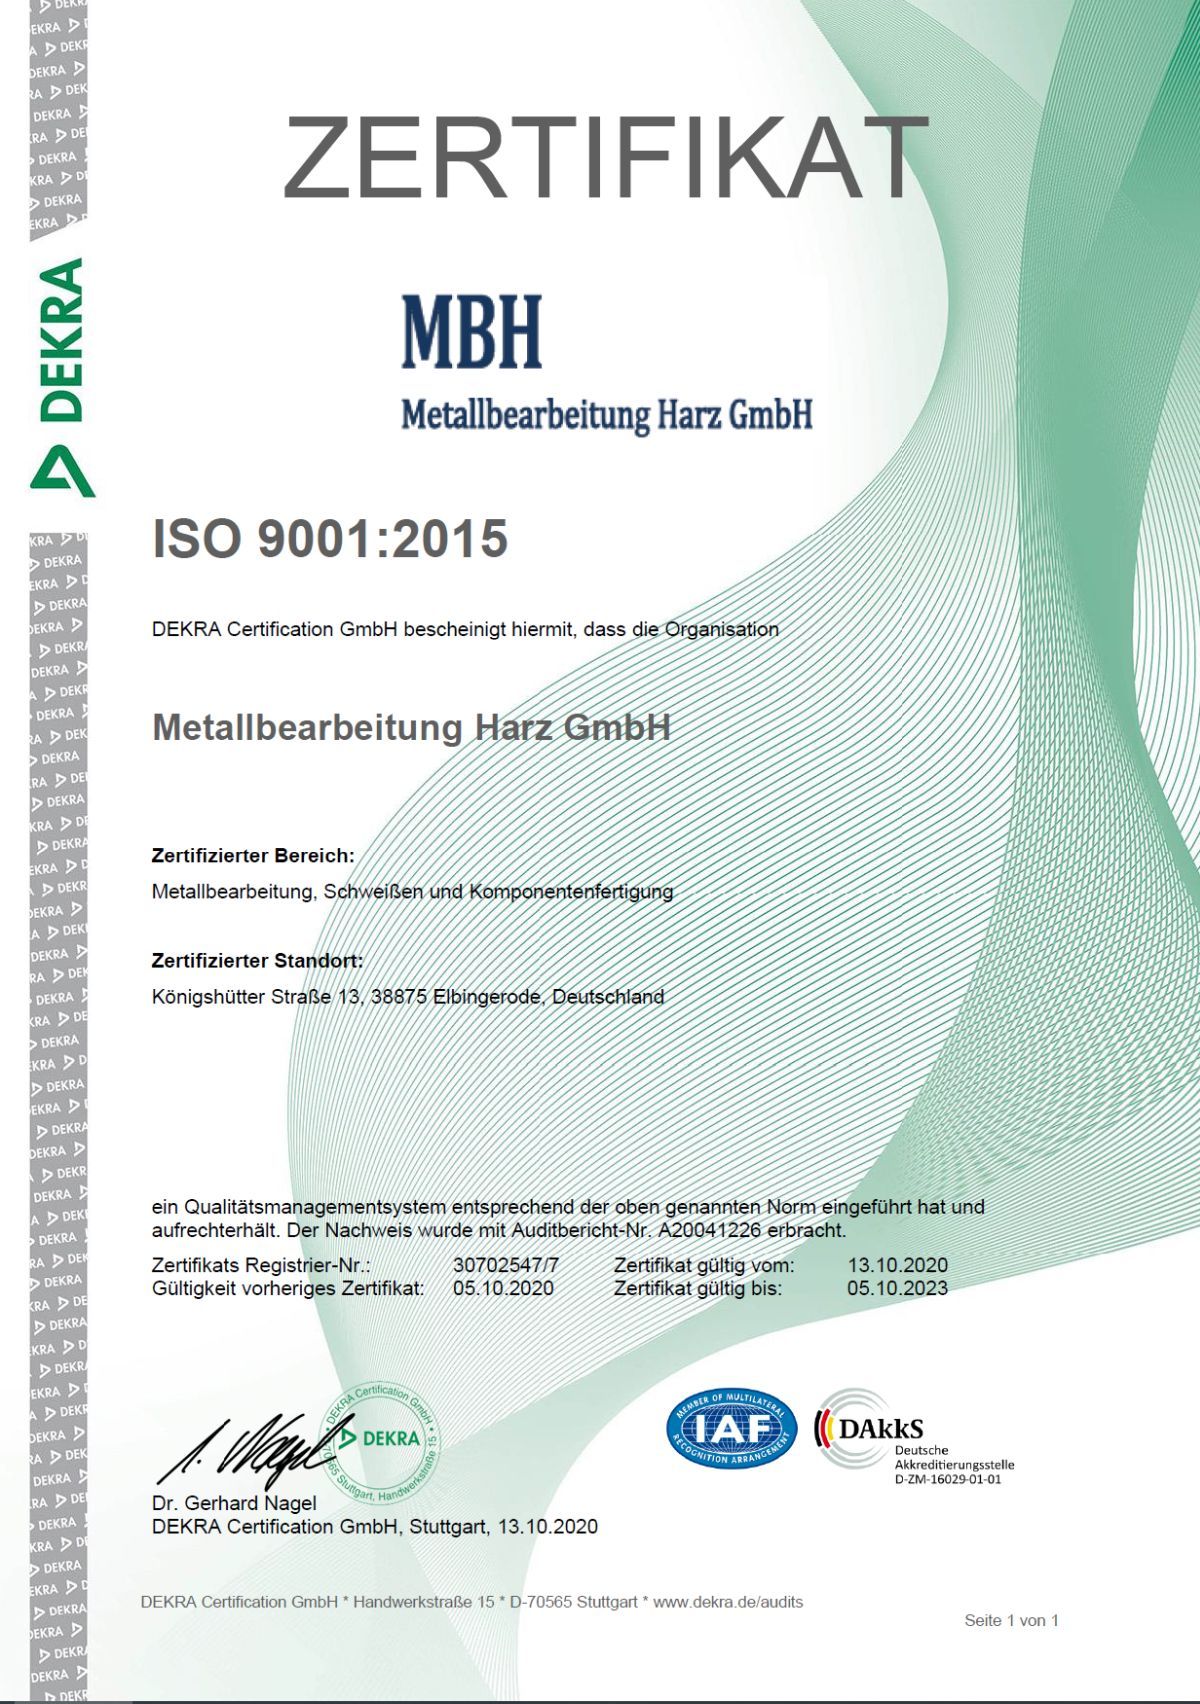 ISO 9001:2015, EN